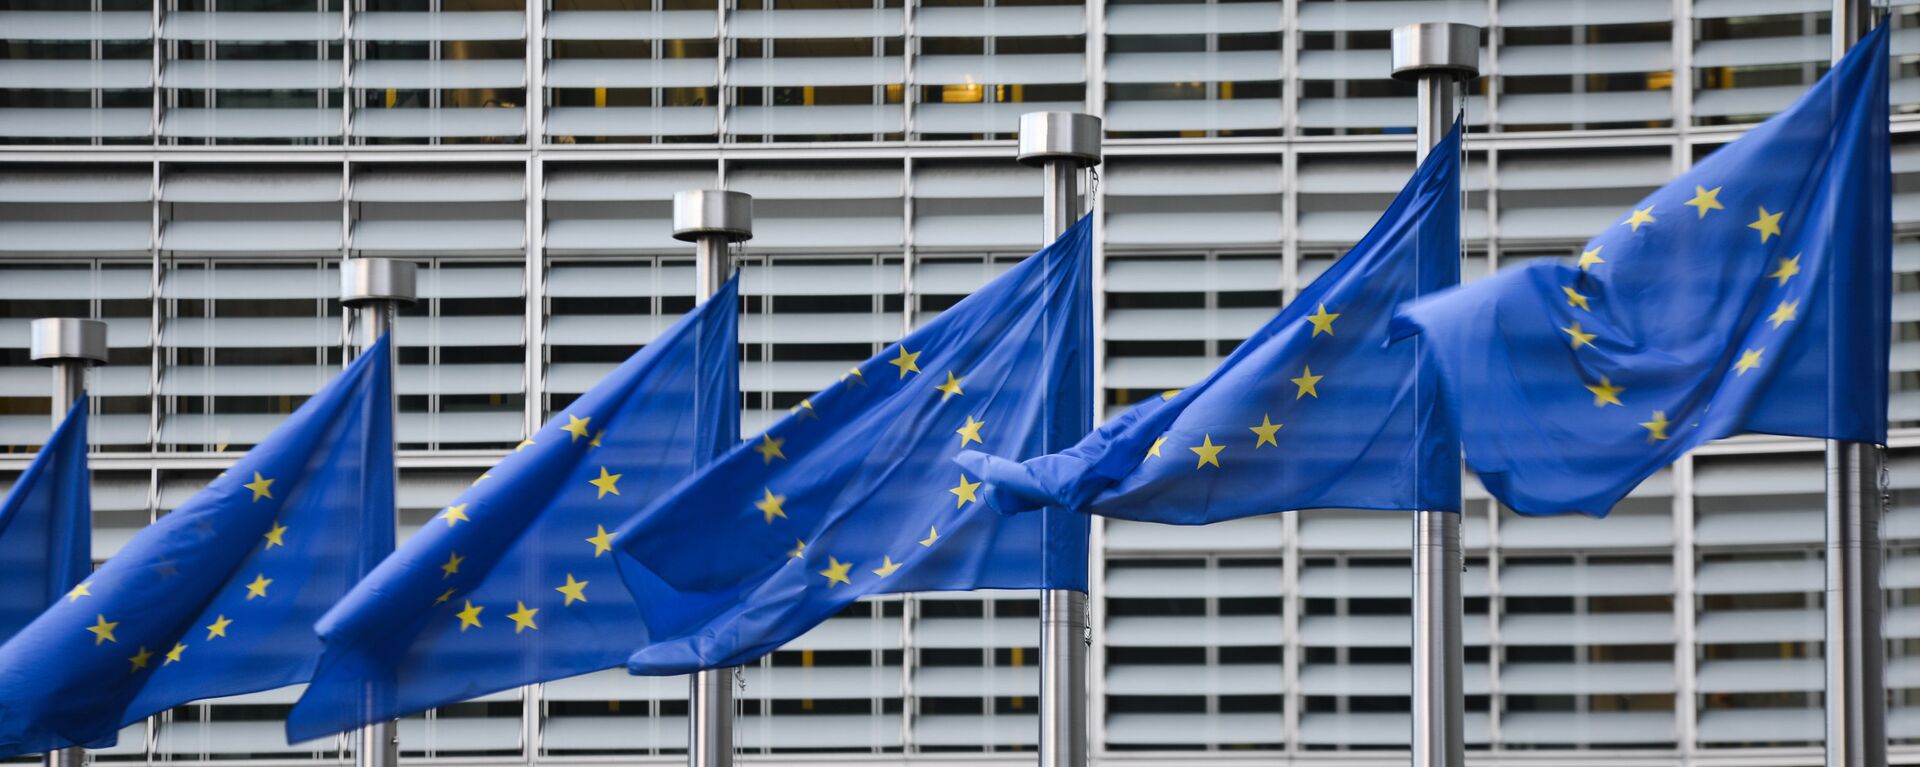 Флаги Евросоюза у здания штаб-квартиры Европейской комиссии в Брюсселе - Sputnik Латвия, 1920, 01.03.2021